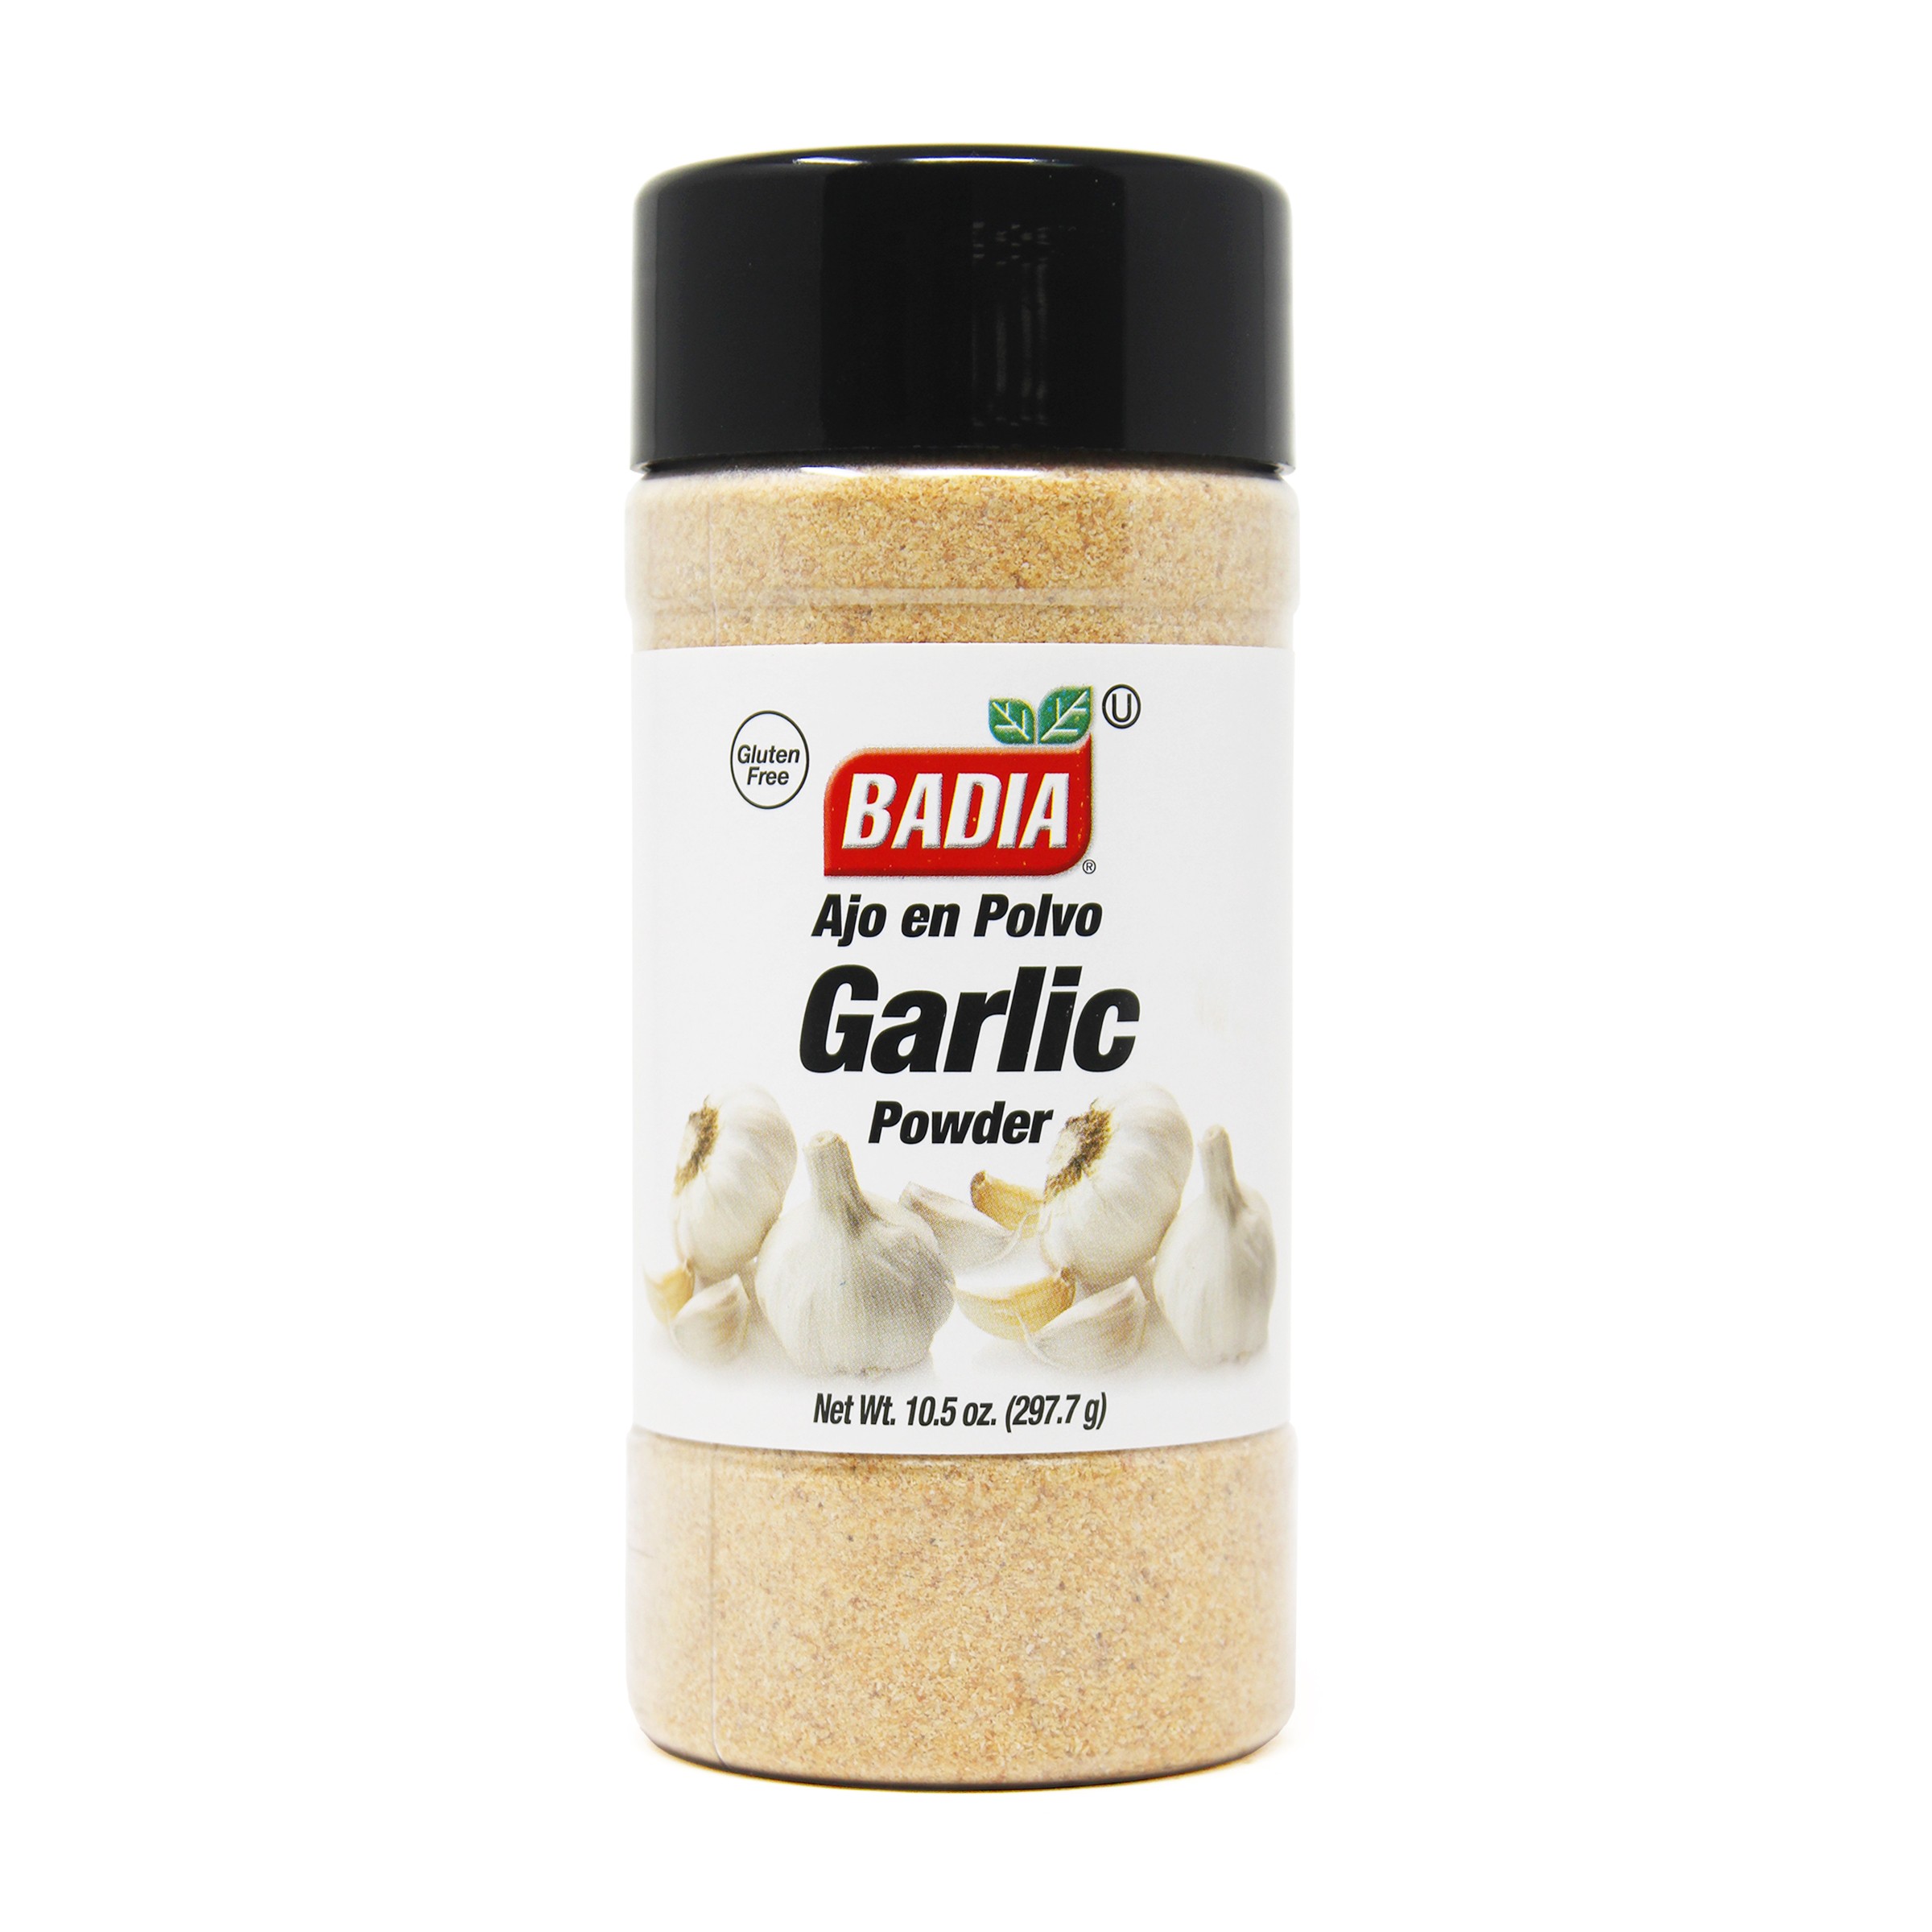 Badia Garlic Powder 297G